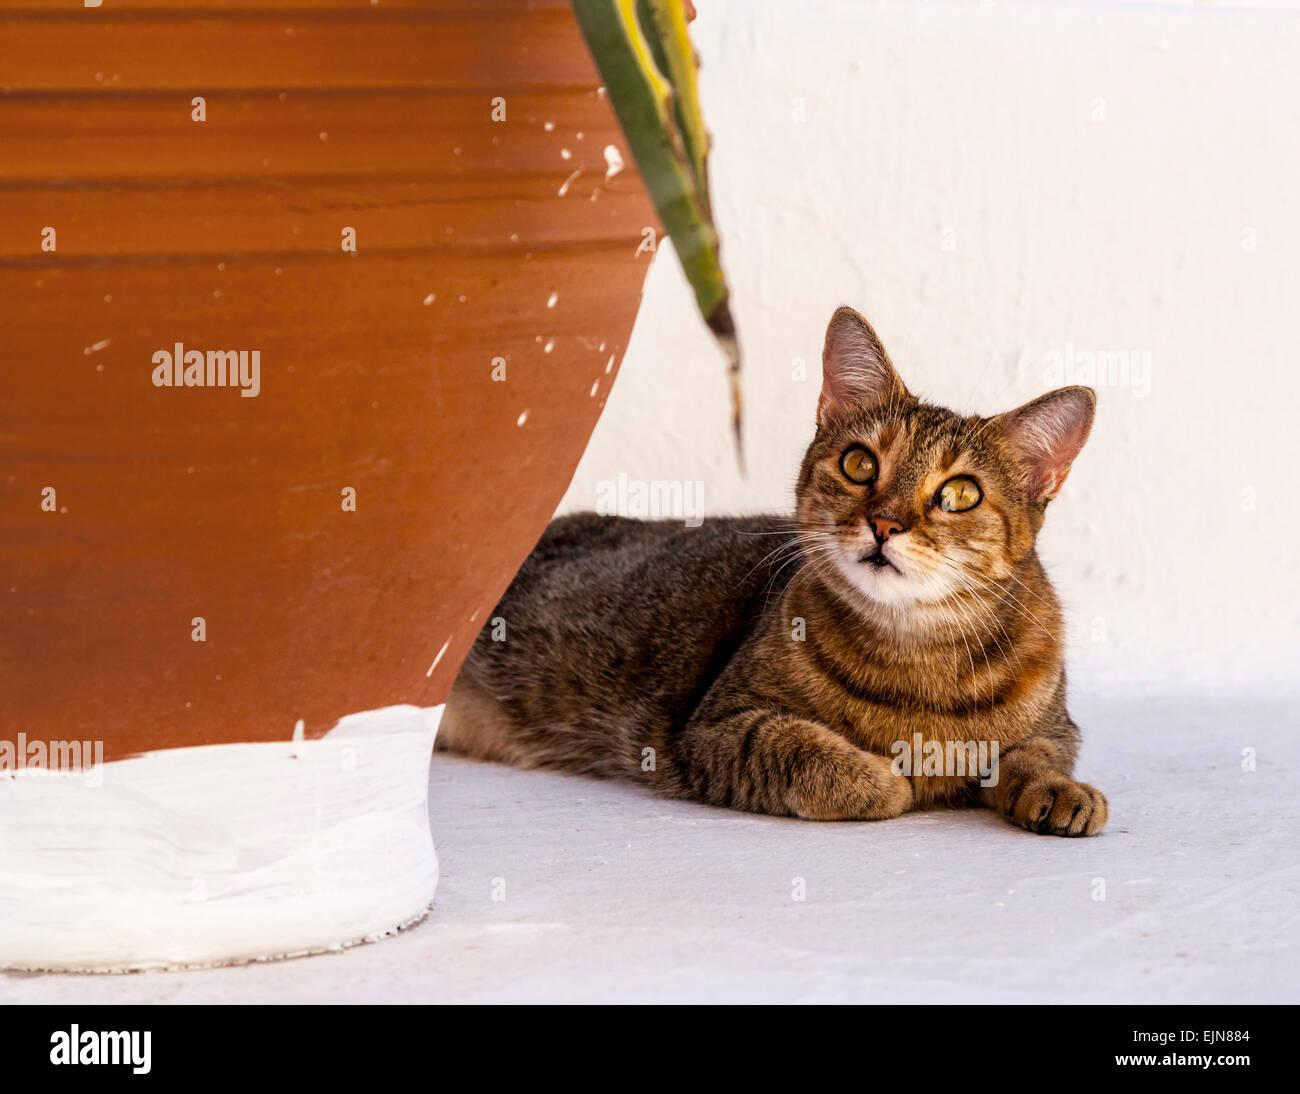 Ein Tabby Katze ruht neben einem Terrakotta-Topf, Fira, Santorini (Thera), Griechenland. Stockfoto